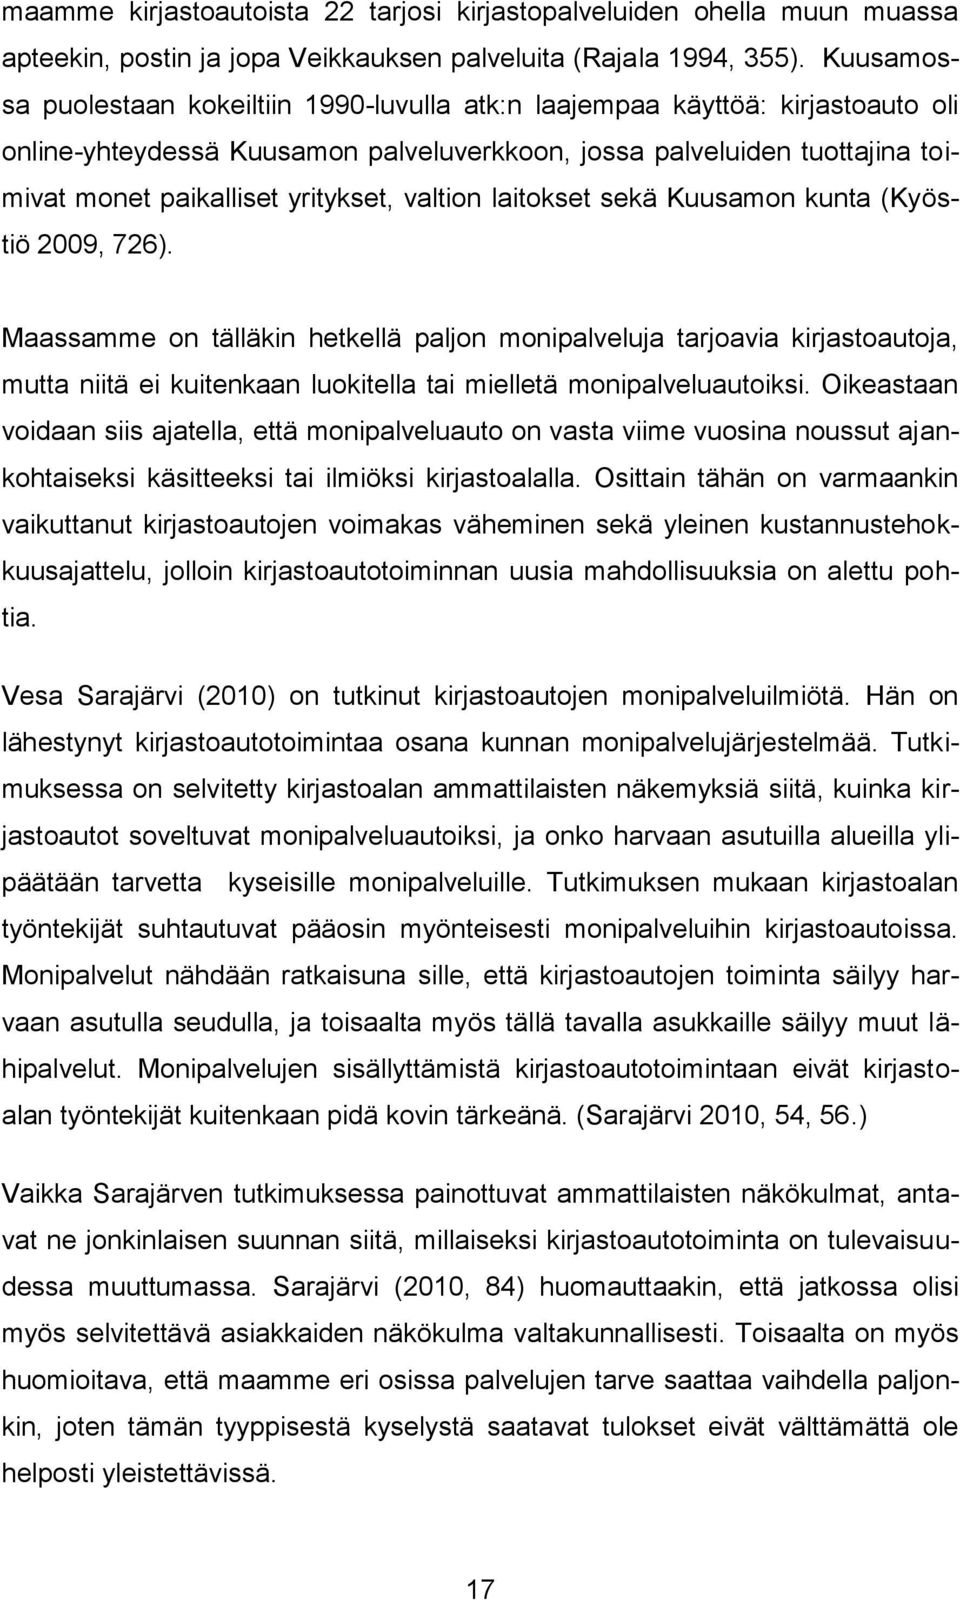 valtion laitokset sekä Kuusamon kunta (Kyöstiö 2009, 726).